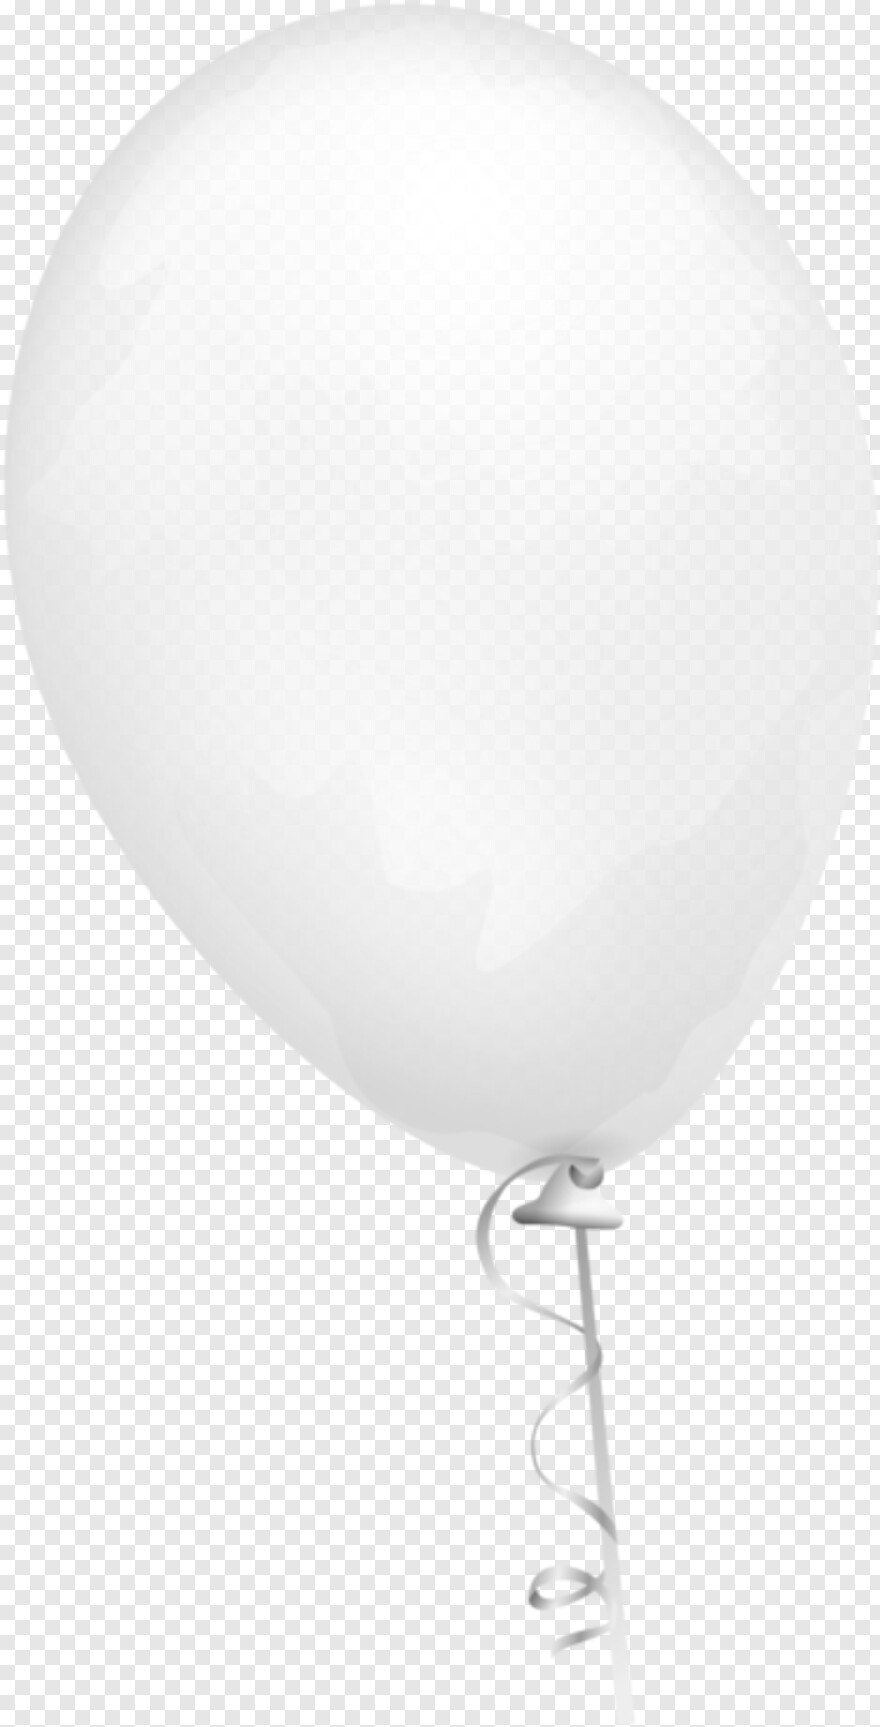 balloon-string # 415935